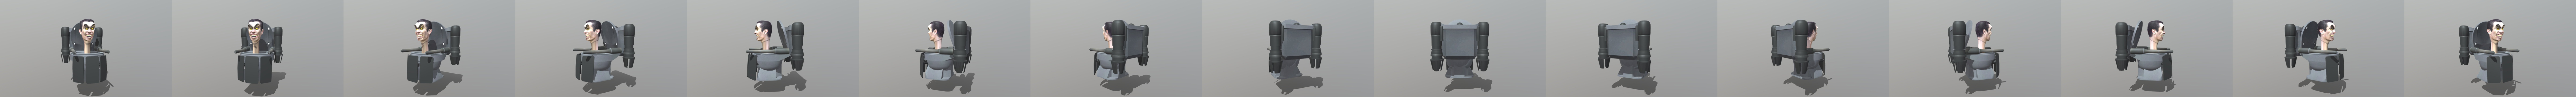 Skibidi toilet gman Upgraded - Download Free 3D model by pamm (@daeboommmm)  [7cbf2d3]